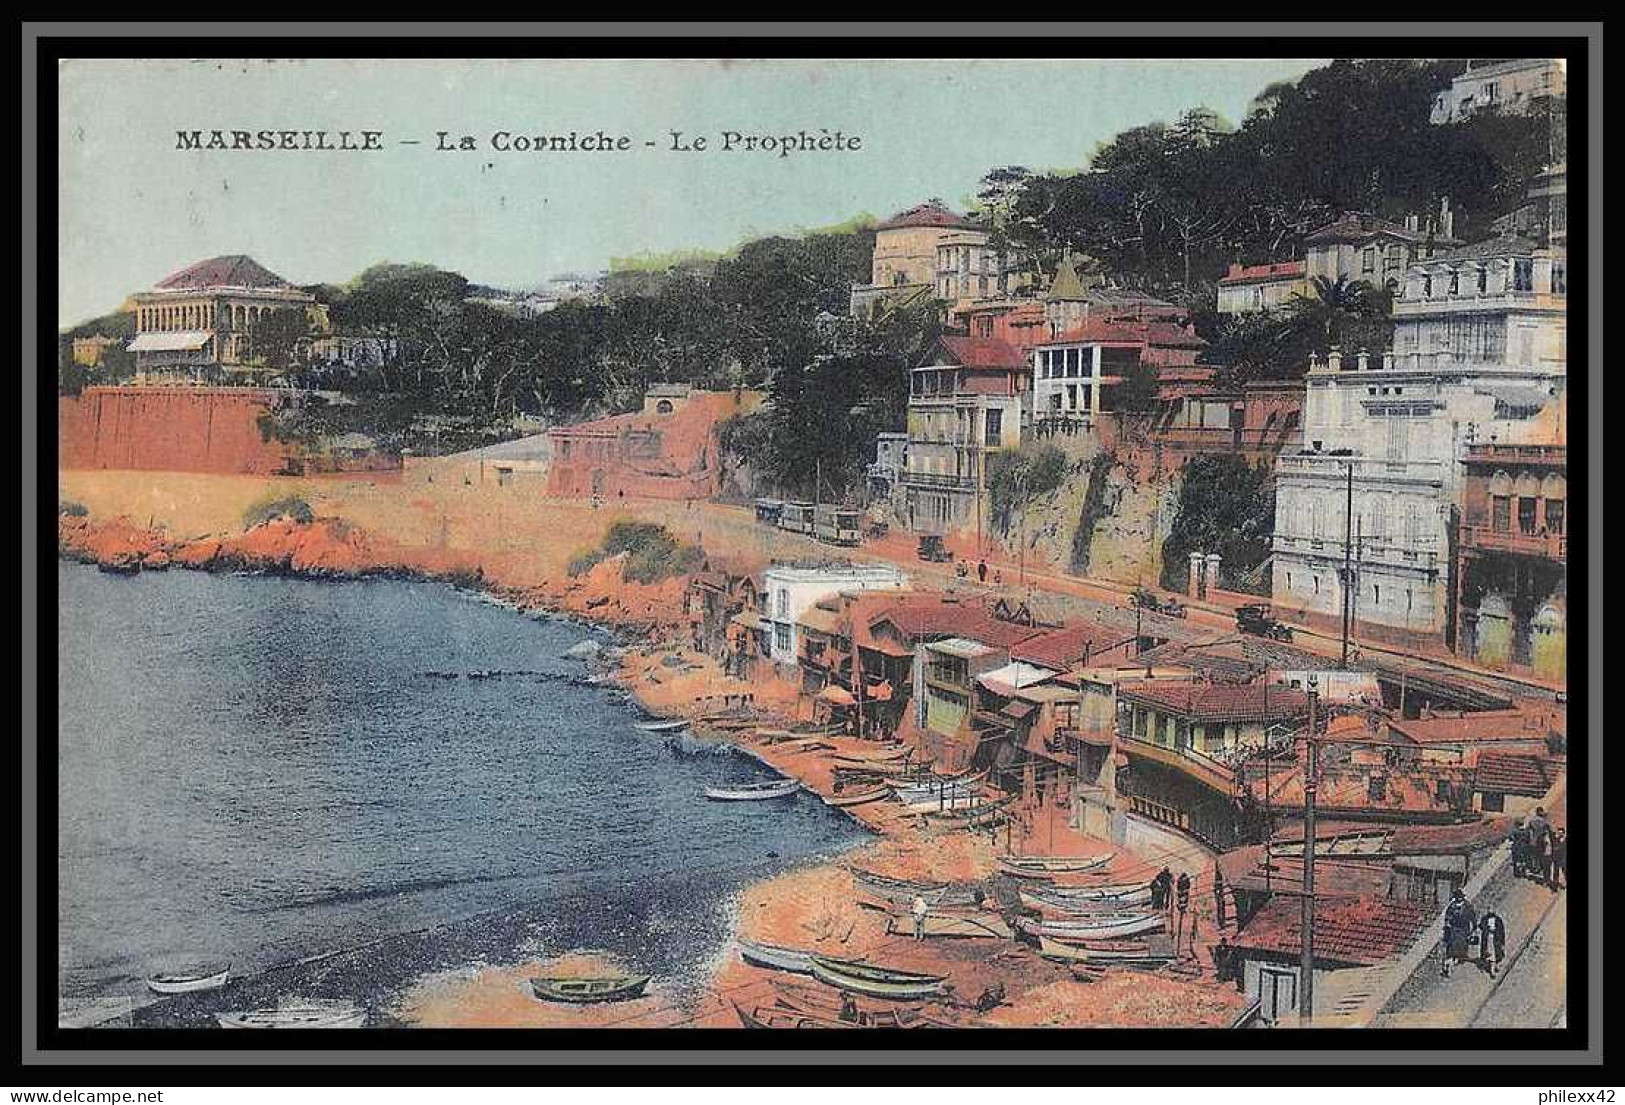 116050 lot de 13 Lettres cover Bouches du rhone Marseille National dont recommandé Carte postale (postcard)